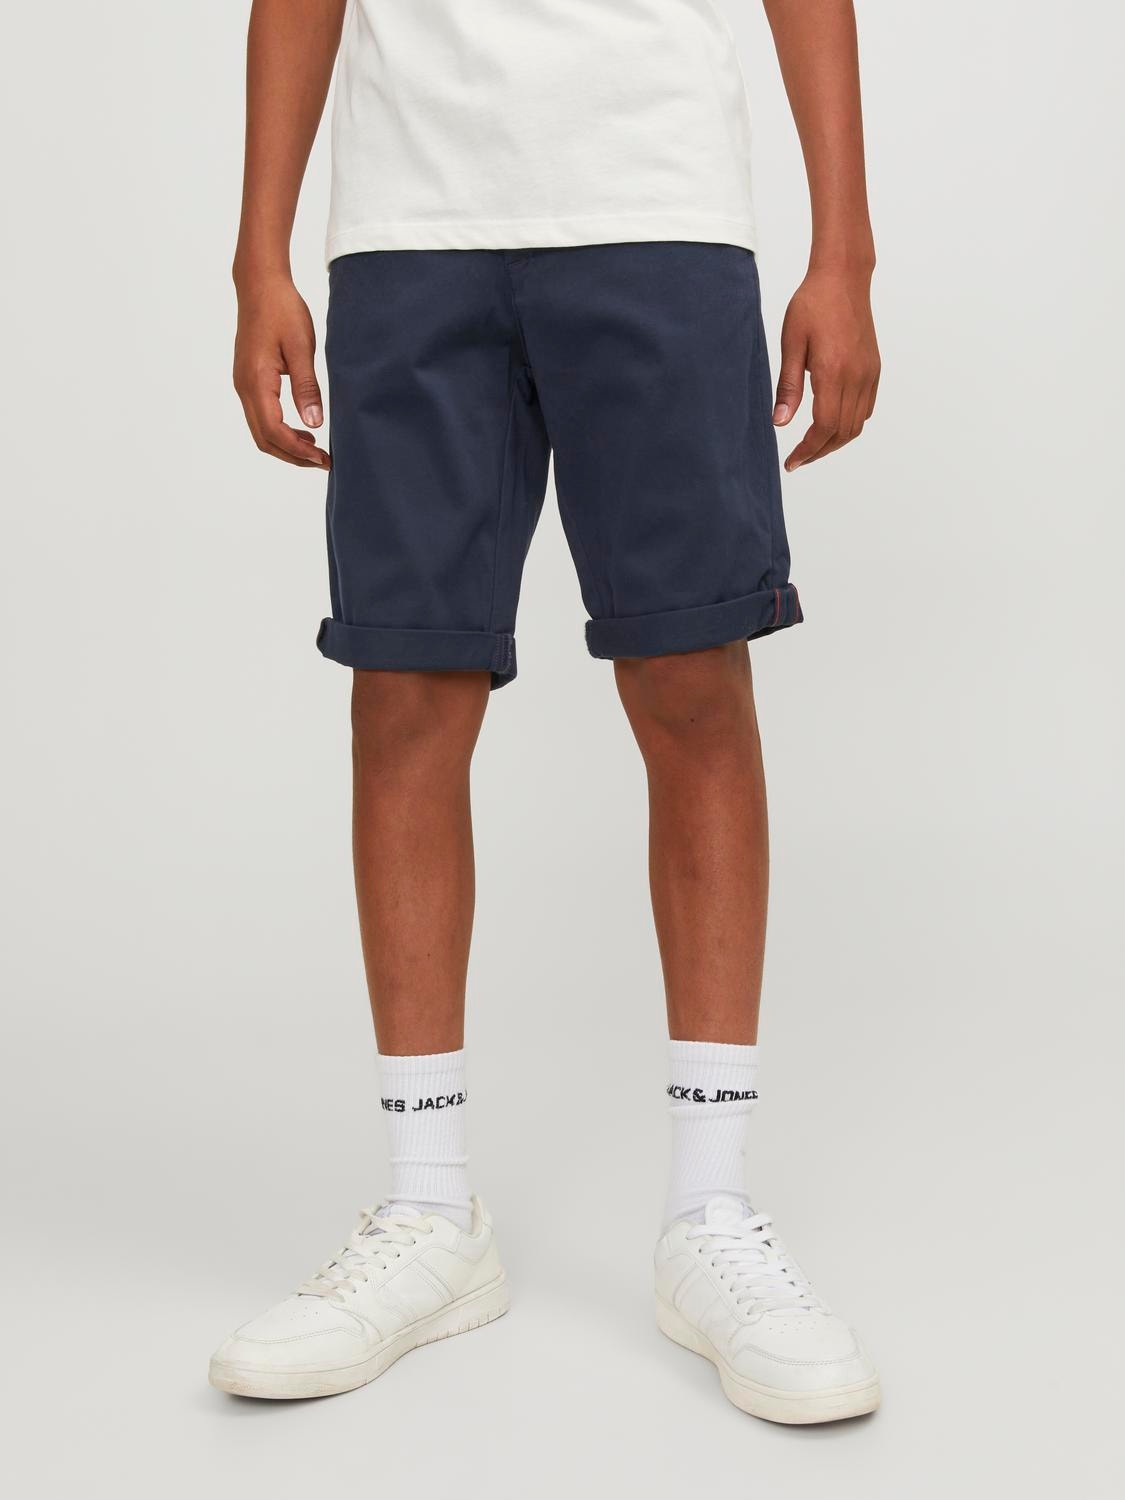 Jack & Jones Regular Fit Chino Shorts Für jungs -Navy Blazer - 12172213